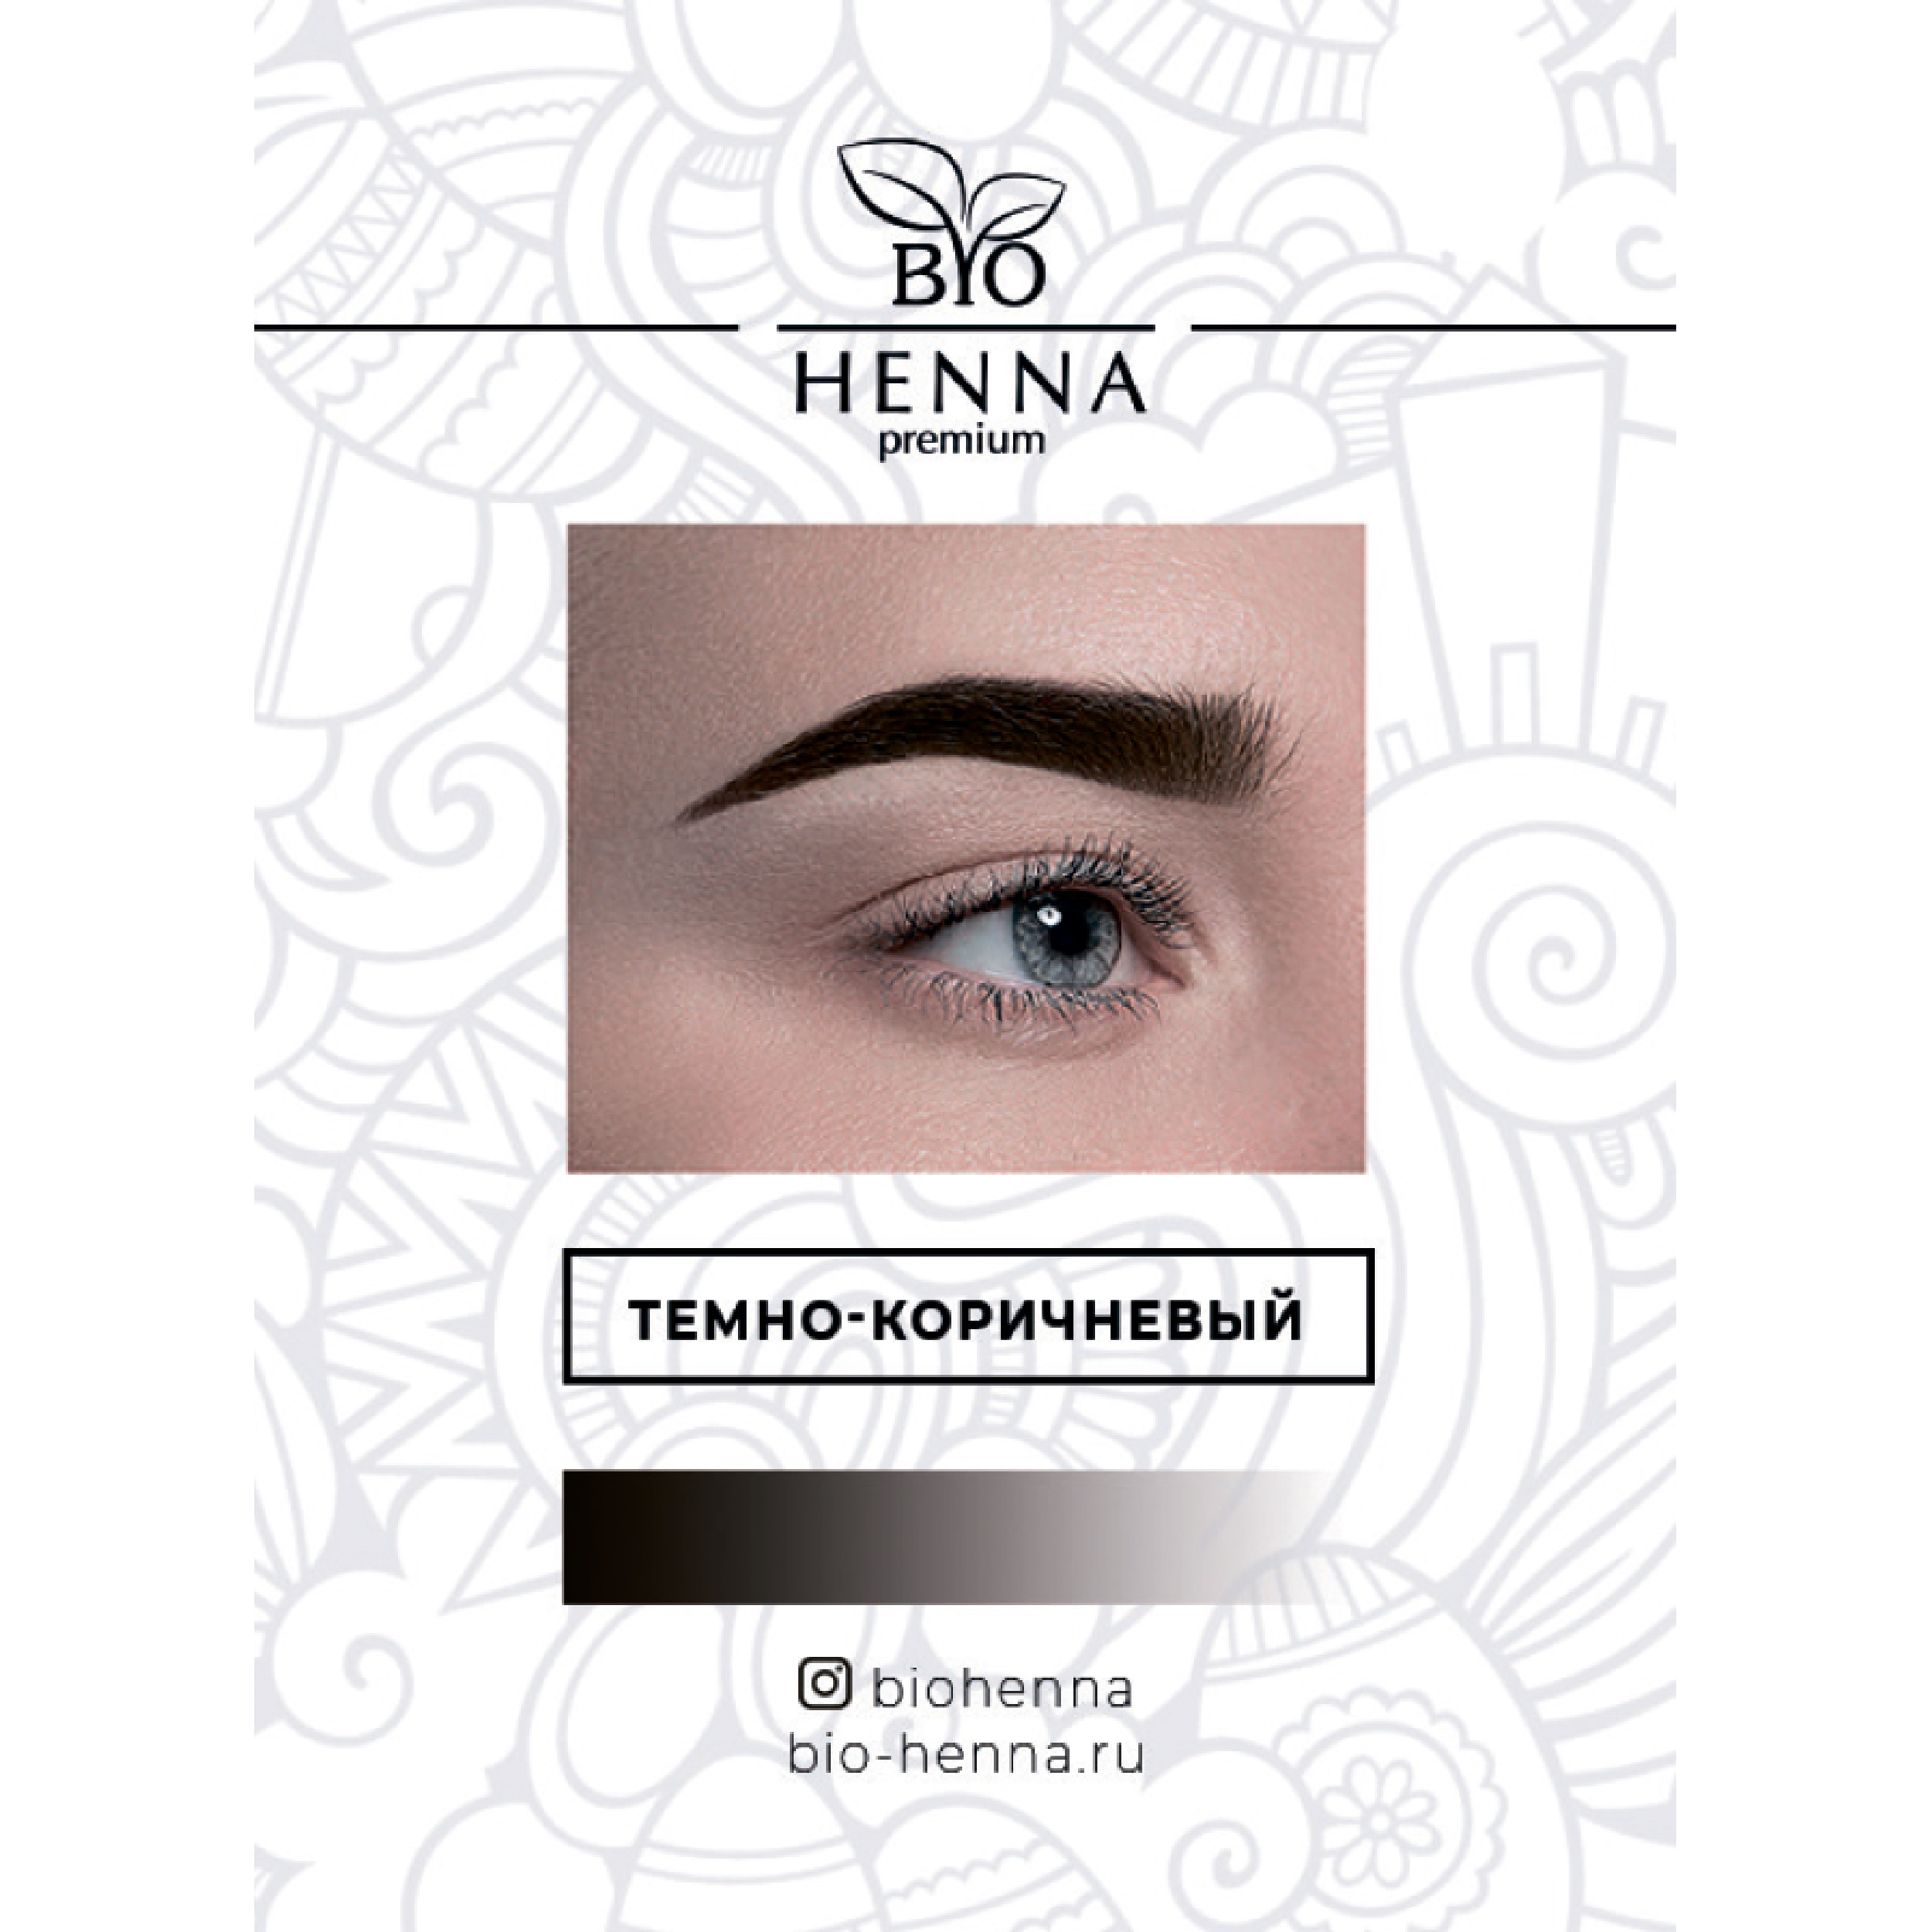 Хна Bio Henna в капсулах оттенок Темно-коричневый, 1 шт, 0,2 гр